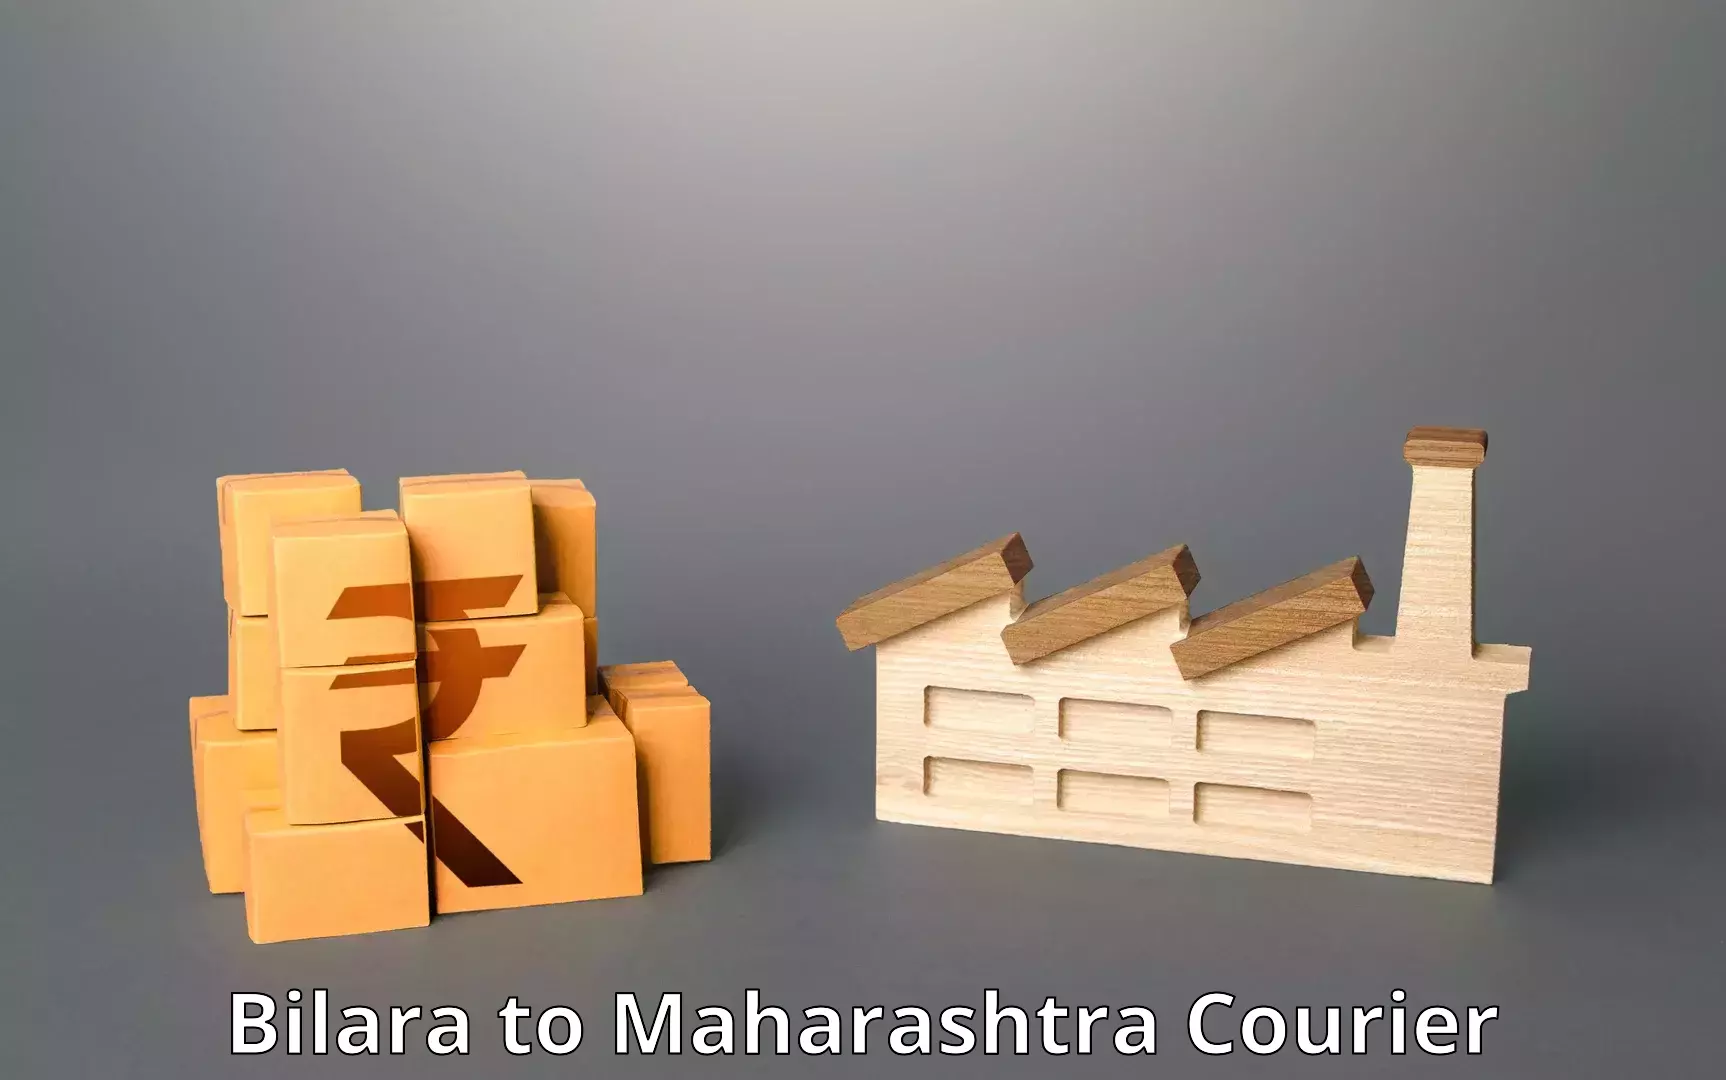 Reliable delivery network Bilara to Maharashtra